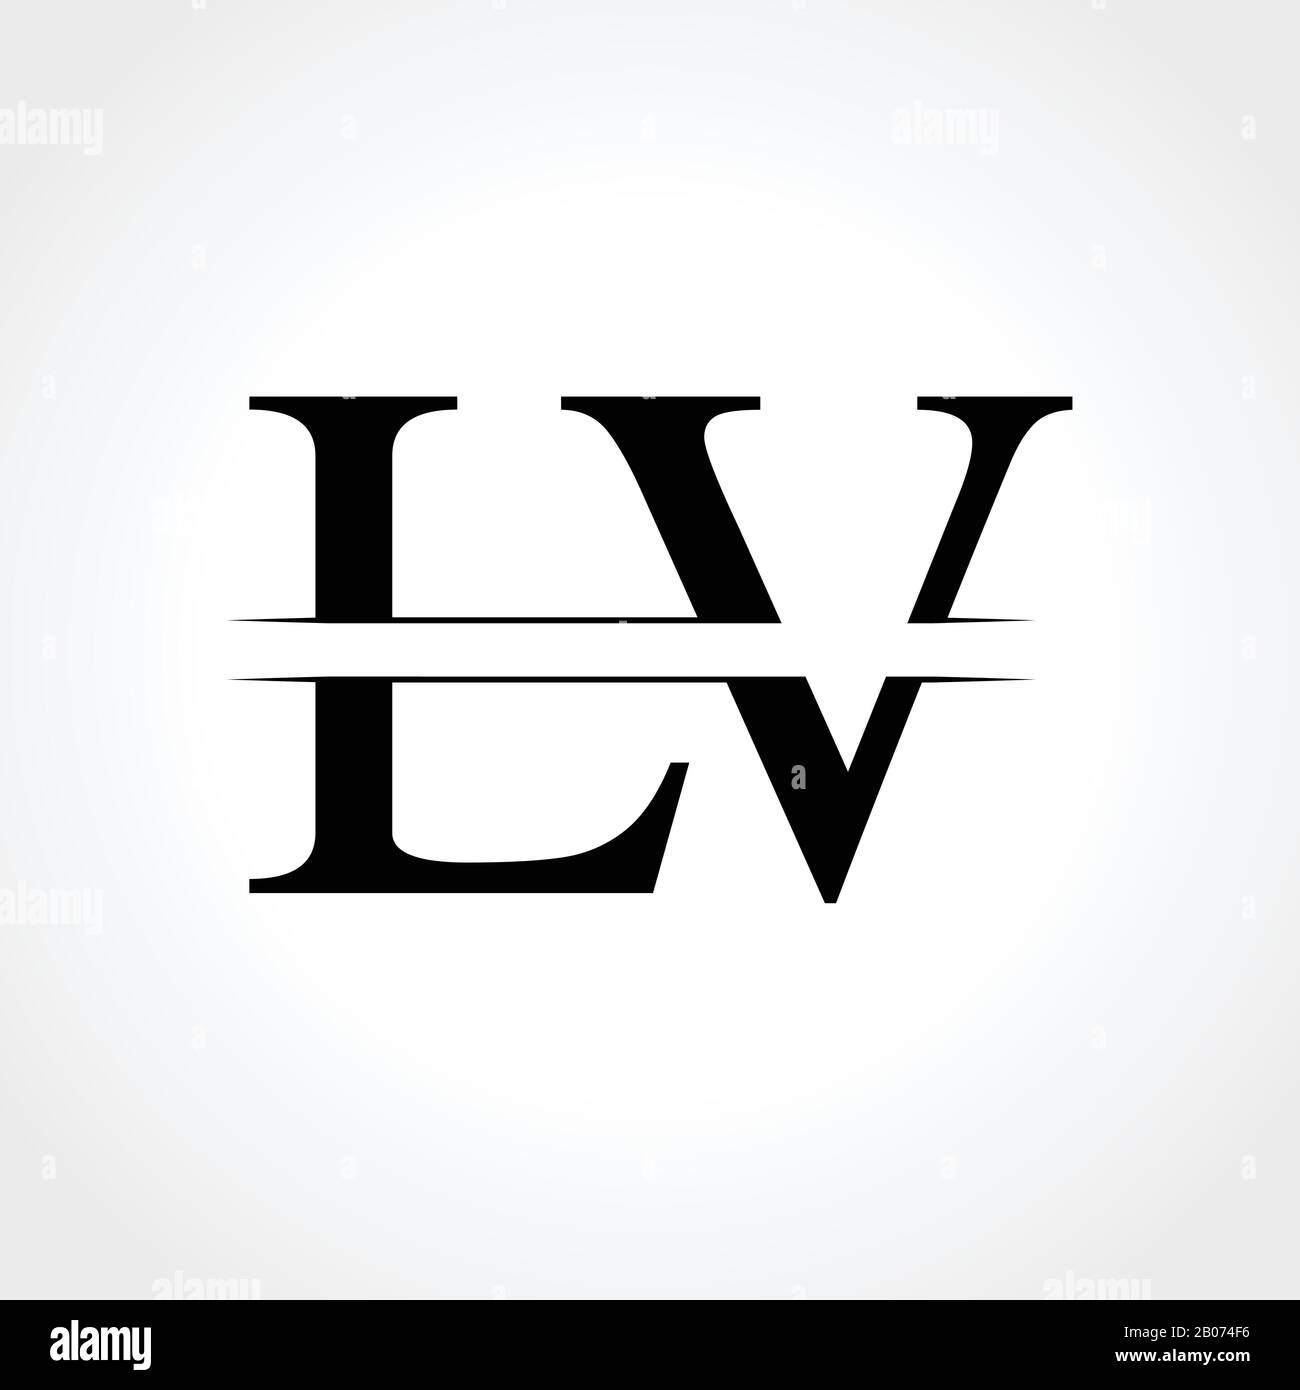 graphic designing vl logo design